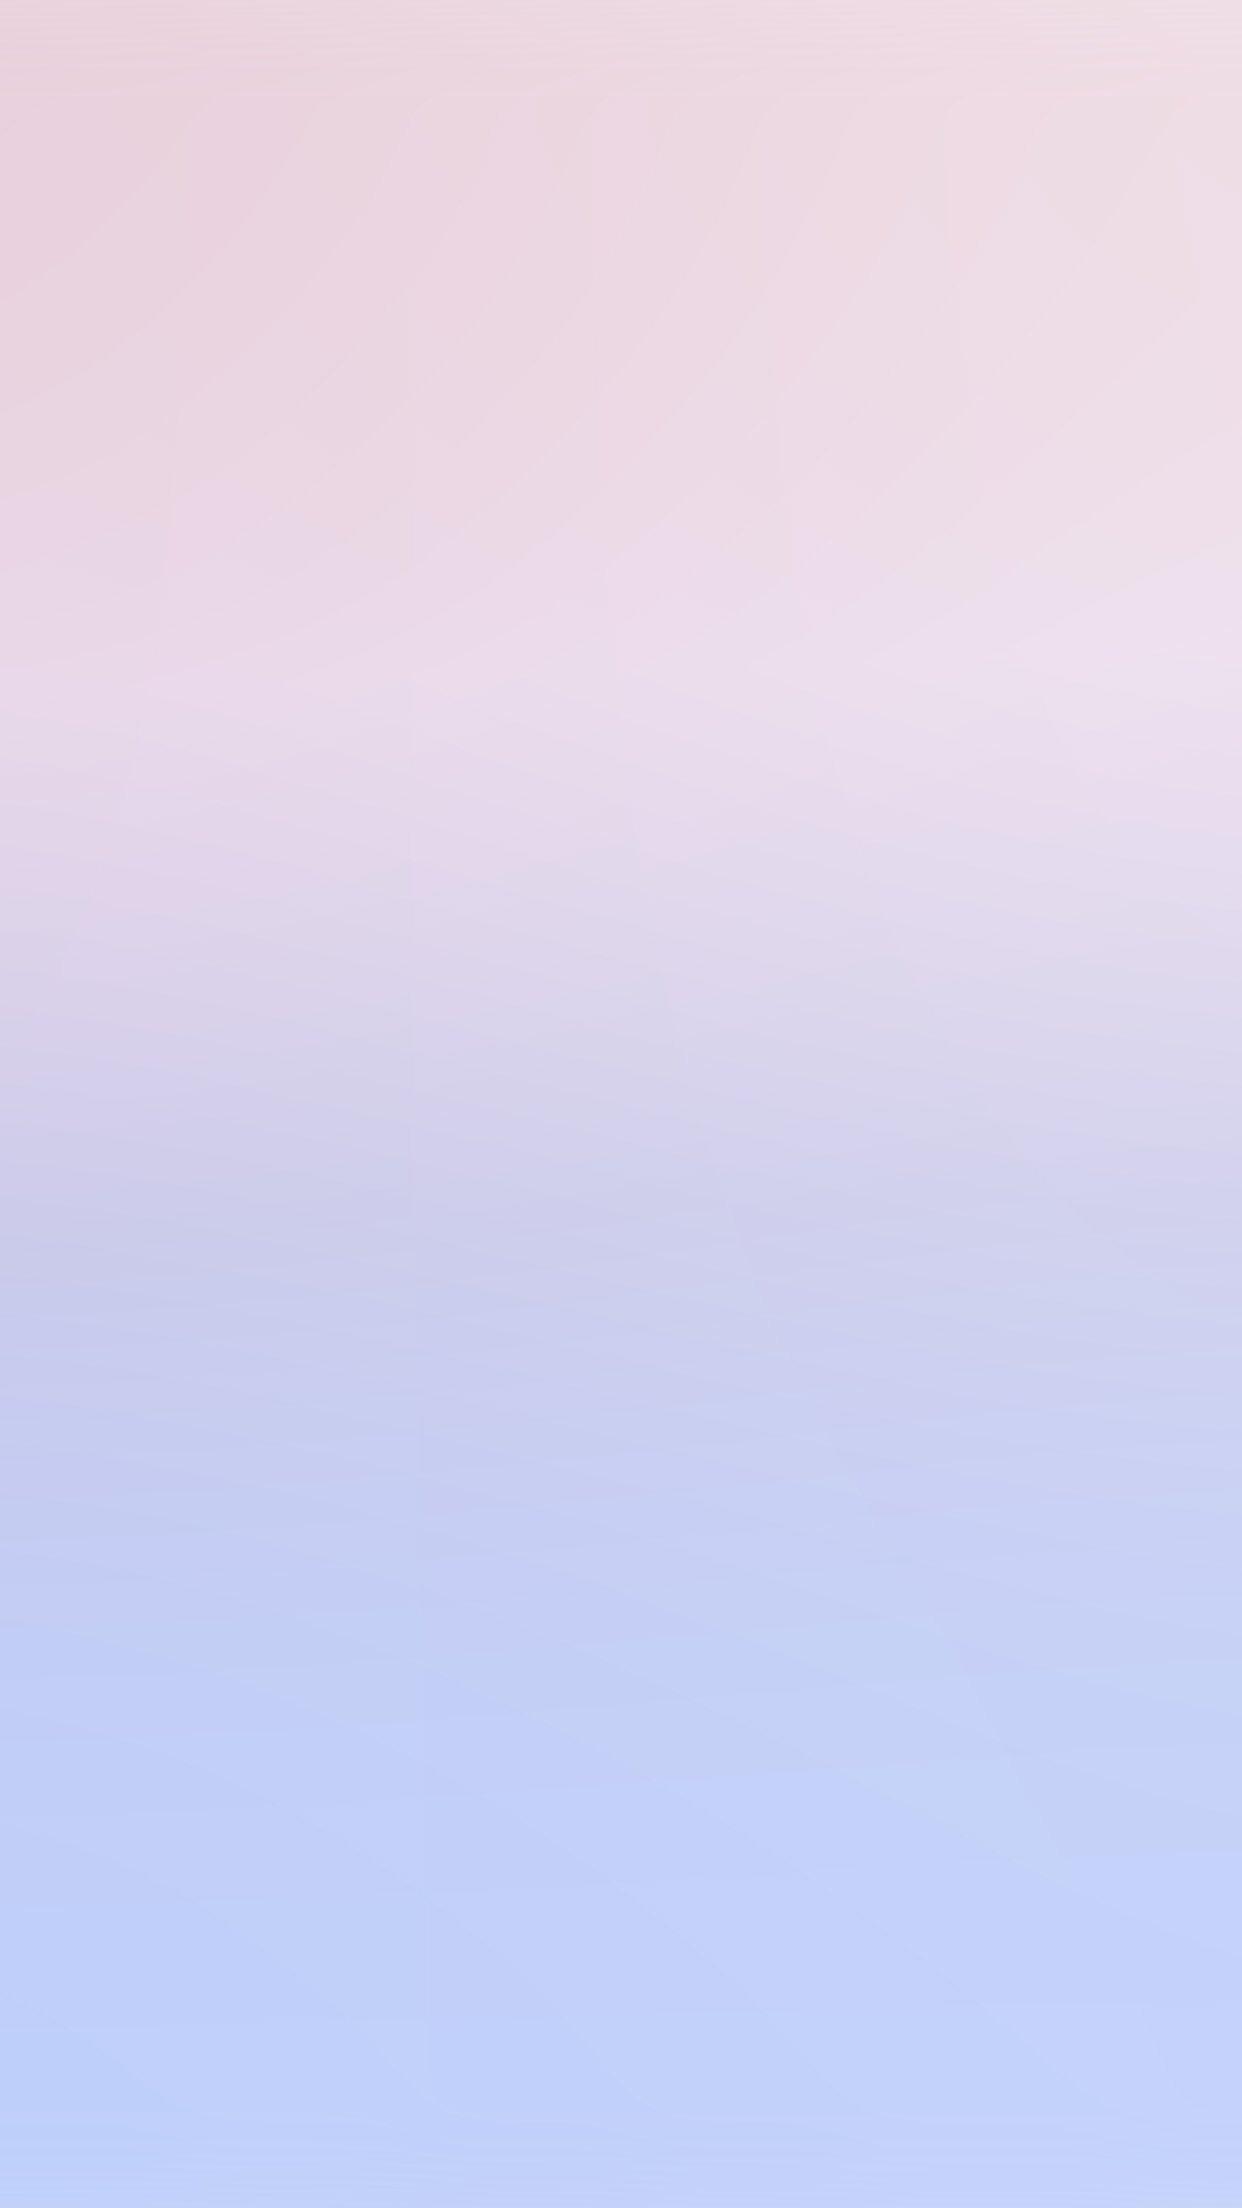 1242x2208 Pastel Blue Hình nền iPhone Miễn phí hàng đầu Màu xanh Pastel - Hình nền thẩm mỹ Pastel Blue, Tải xuống hình nền